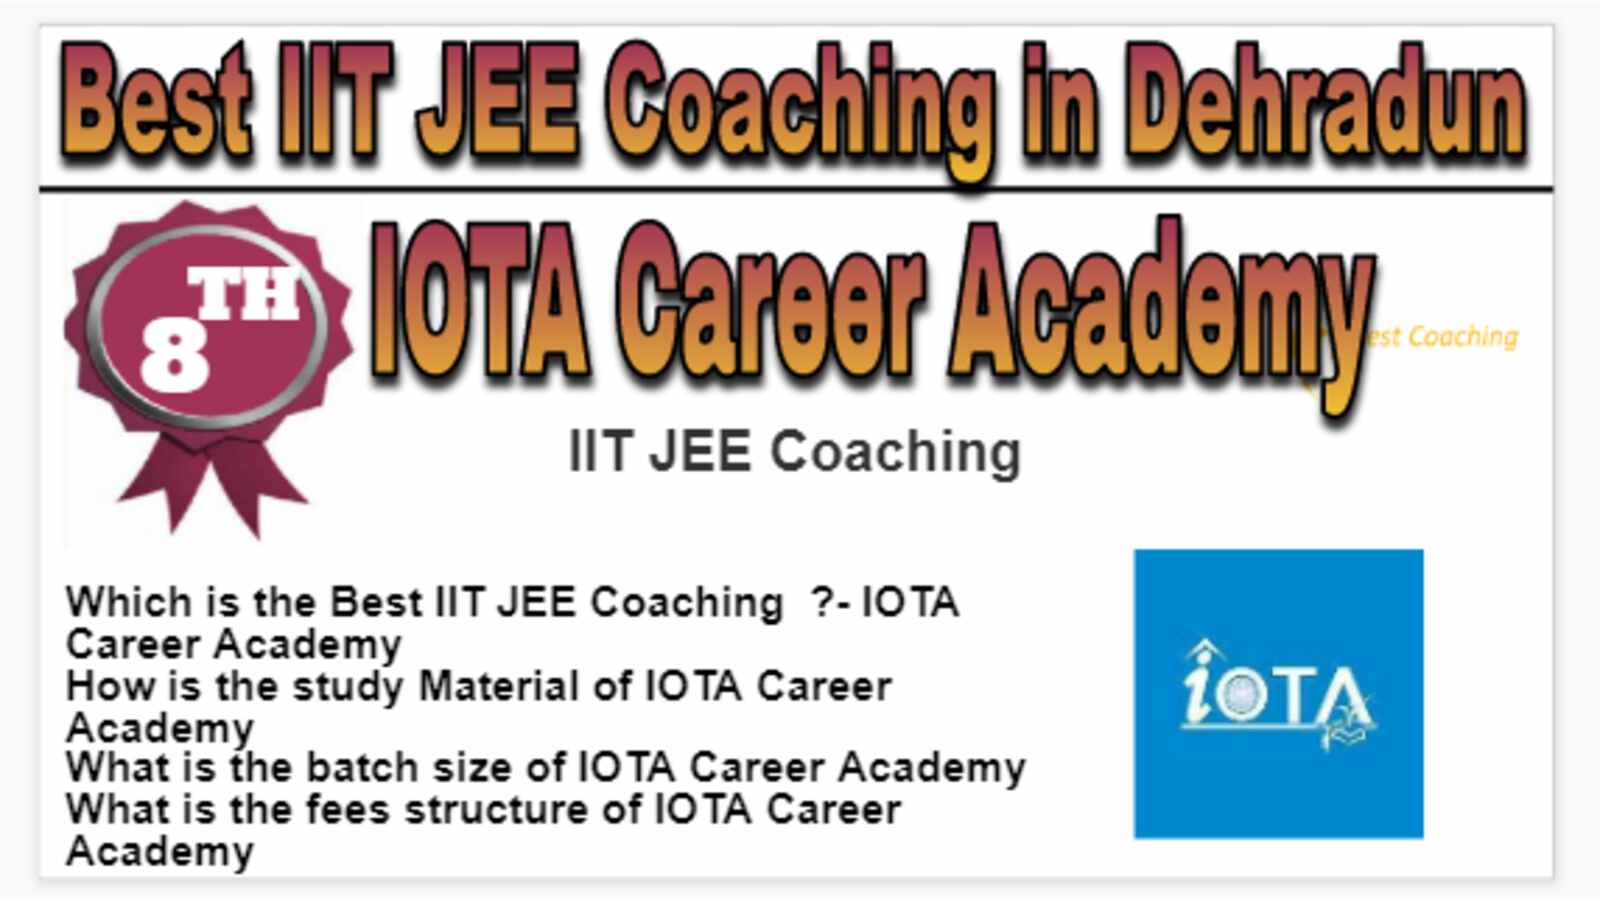 Rank 8 Best IIT JEE Coaching in Dehradun